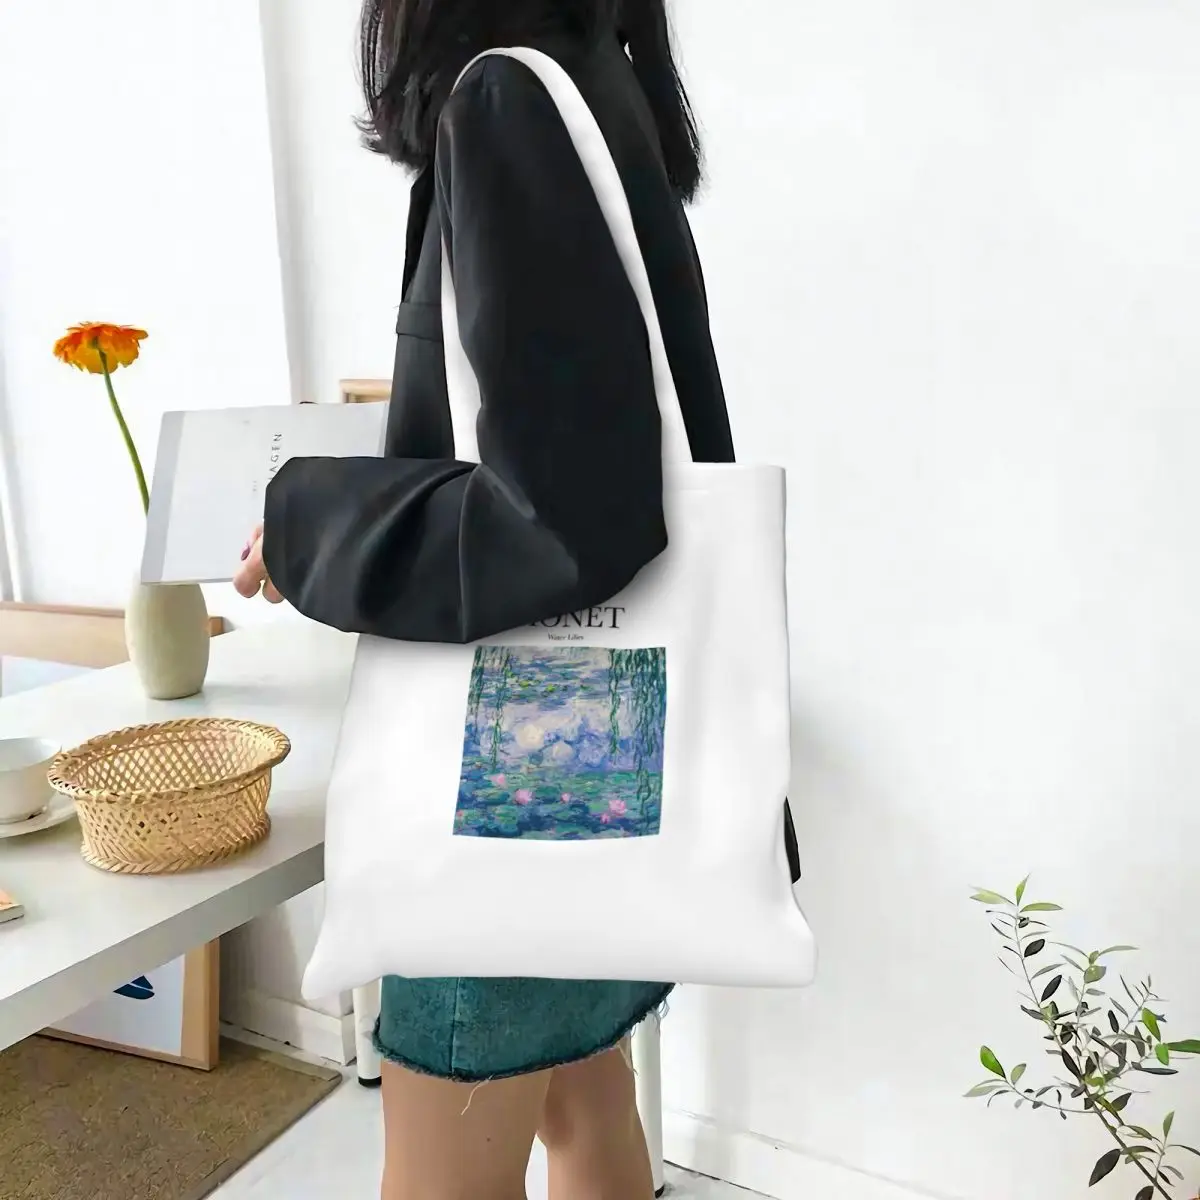 Хозяйственная сумка Monet - Water Lilies Canva The Tote Bag, сумки для покупок, складная Многоразовая женская модная сумка-тоут на плечо, дорожная сумочка Изображение 4